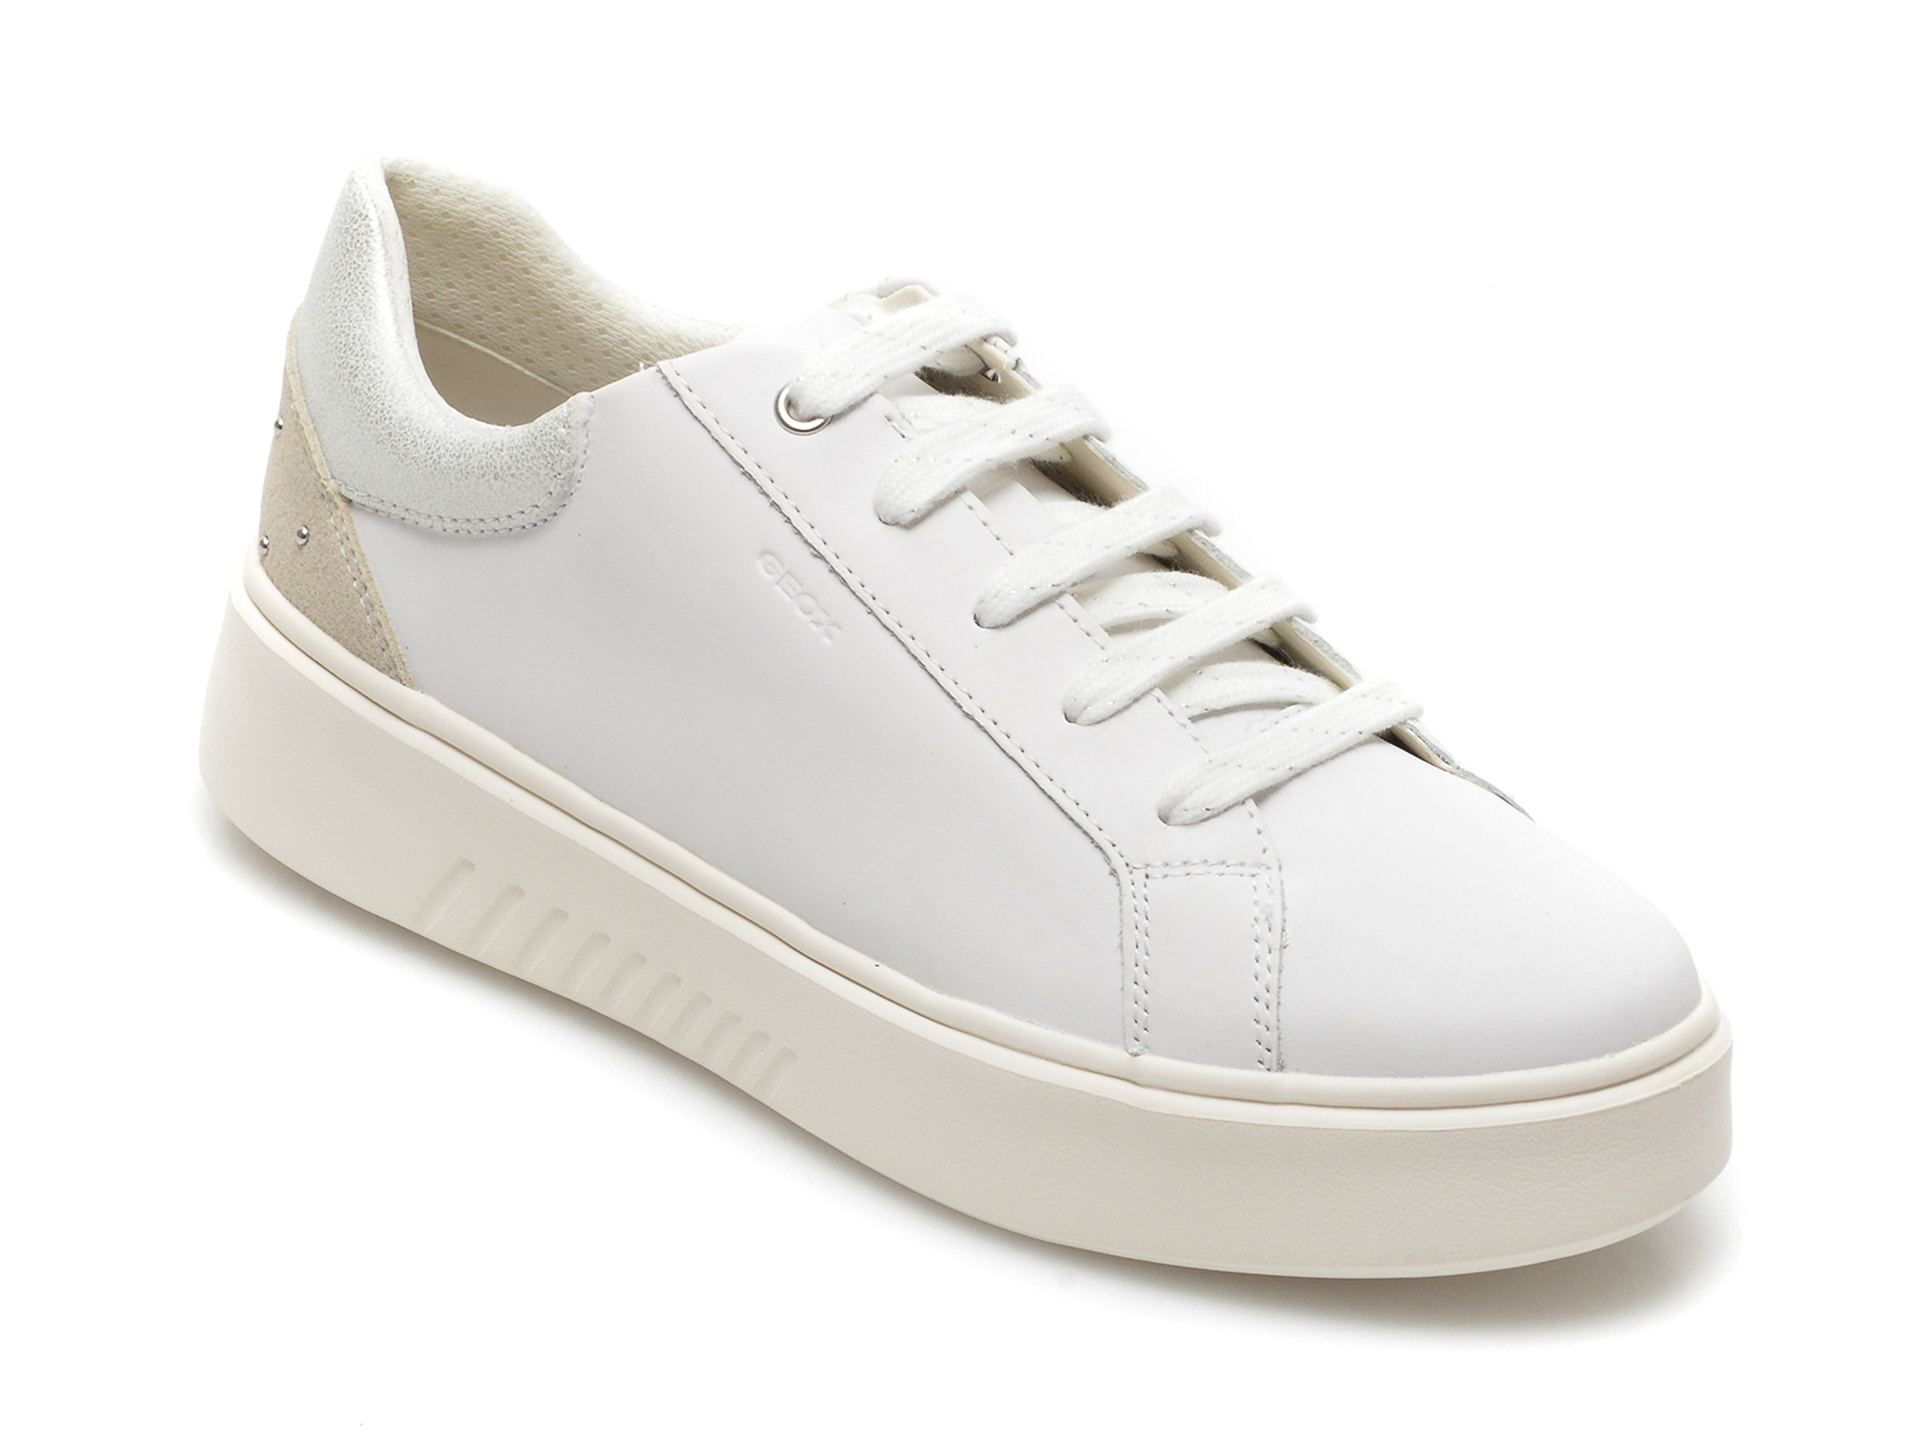 Pantofi sport GEOX albi, D168DA, din piele naturala Geox Geox